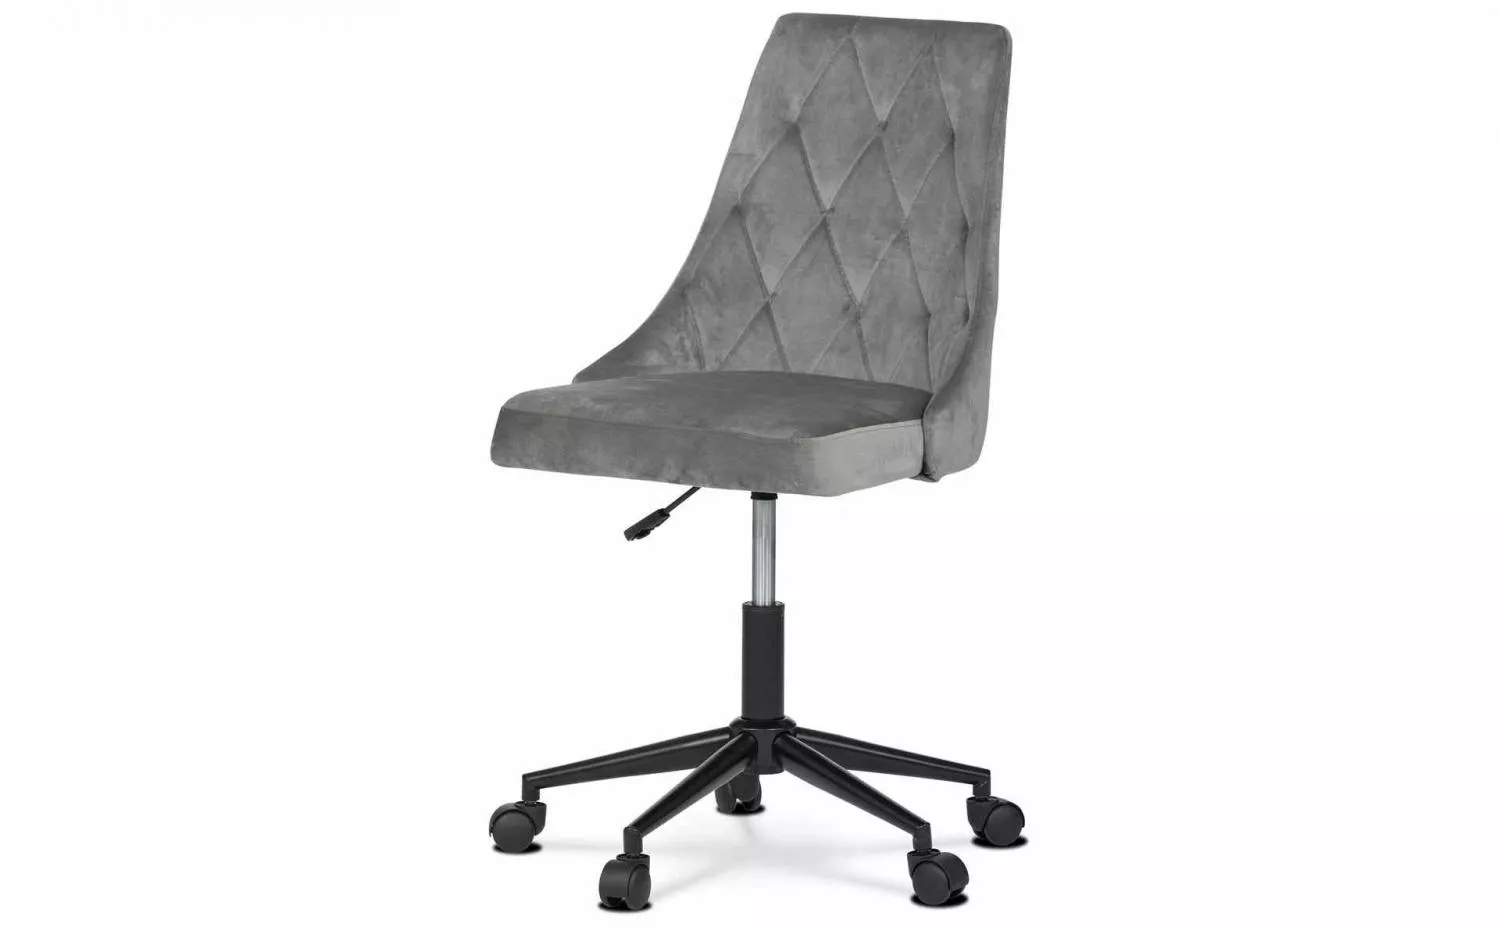 Kancelářská židle Ka-j402 grey4